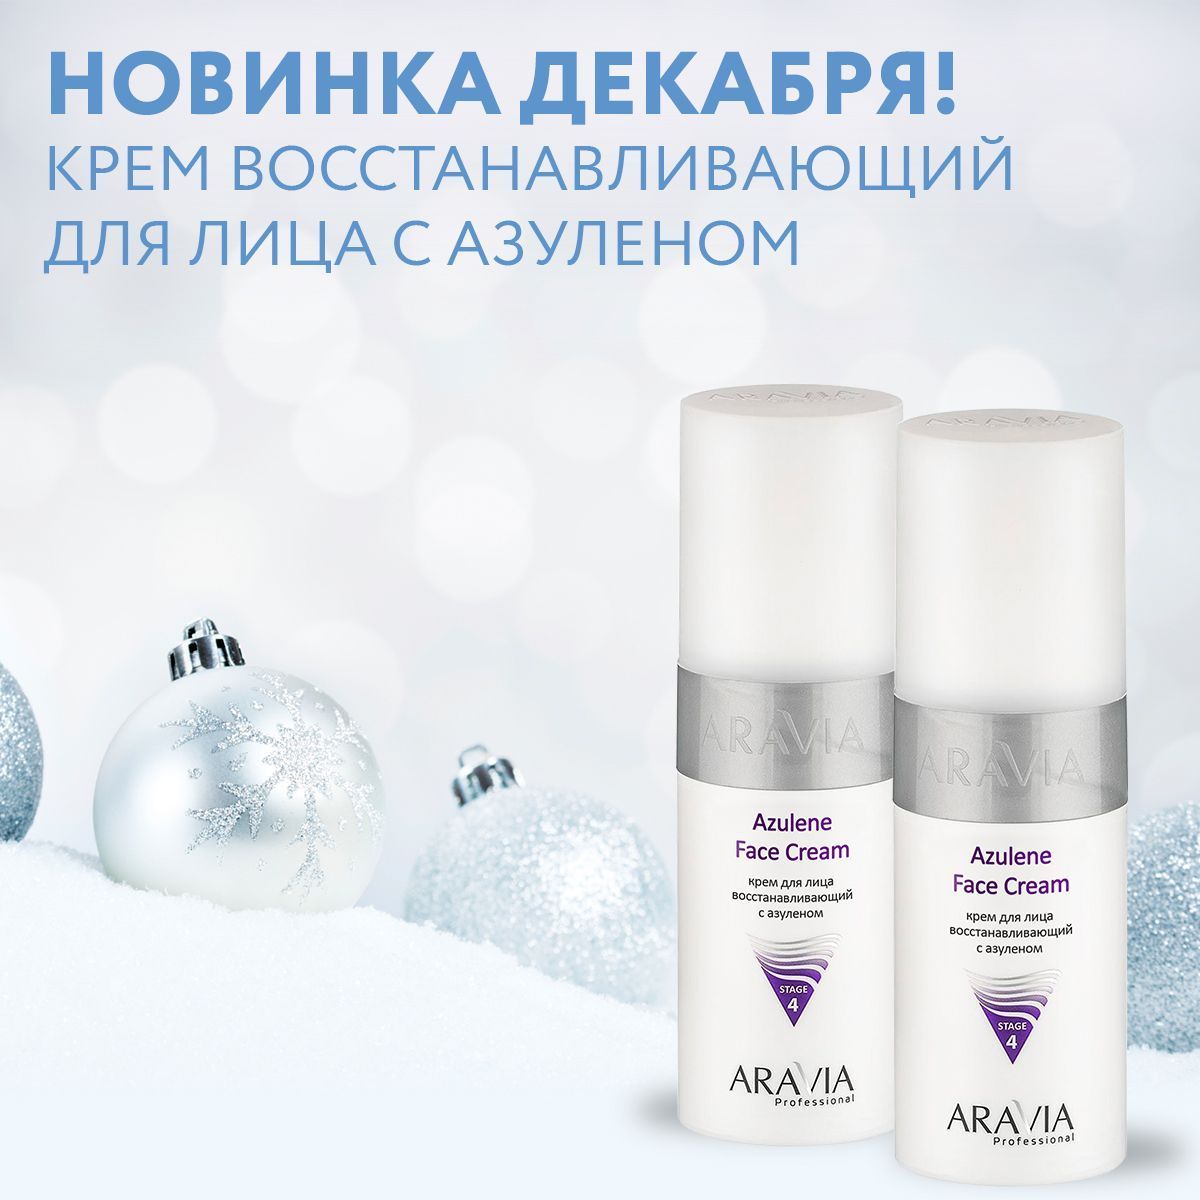 Новинка декабря! Крем восстанавливающий для лица с азуленом Azulene Face Cream, 150мл